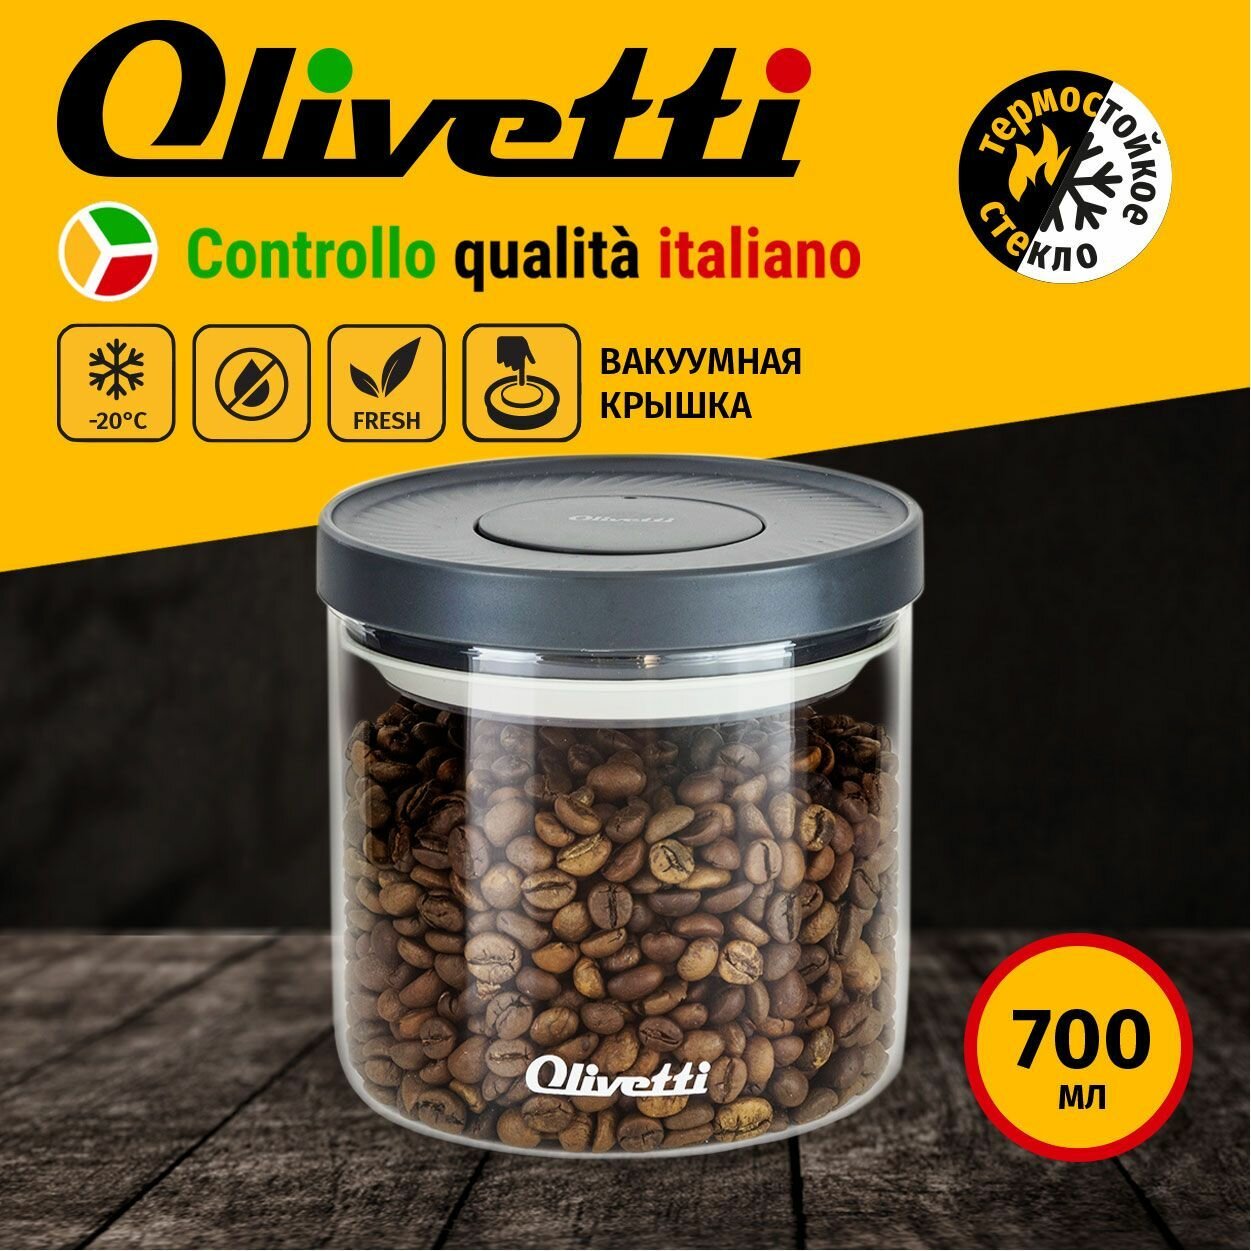 Банка стеклянная Olivetti GFC076 с вакуумной крышкой POP UP для хранения продуктов, объем 700 мл, можно мыть в ПММ